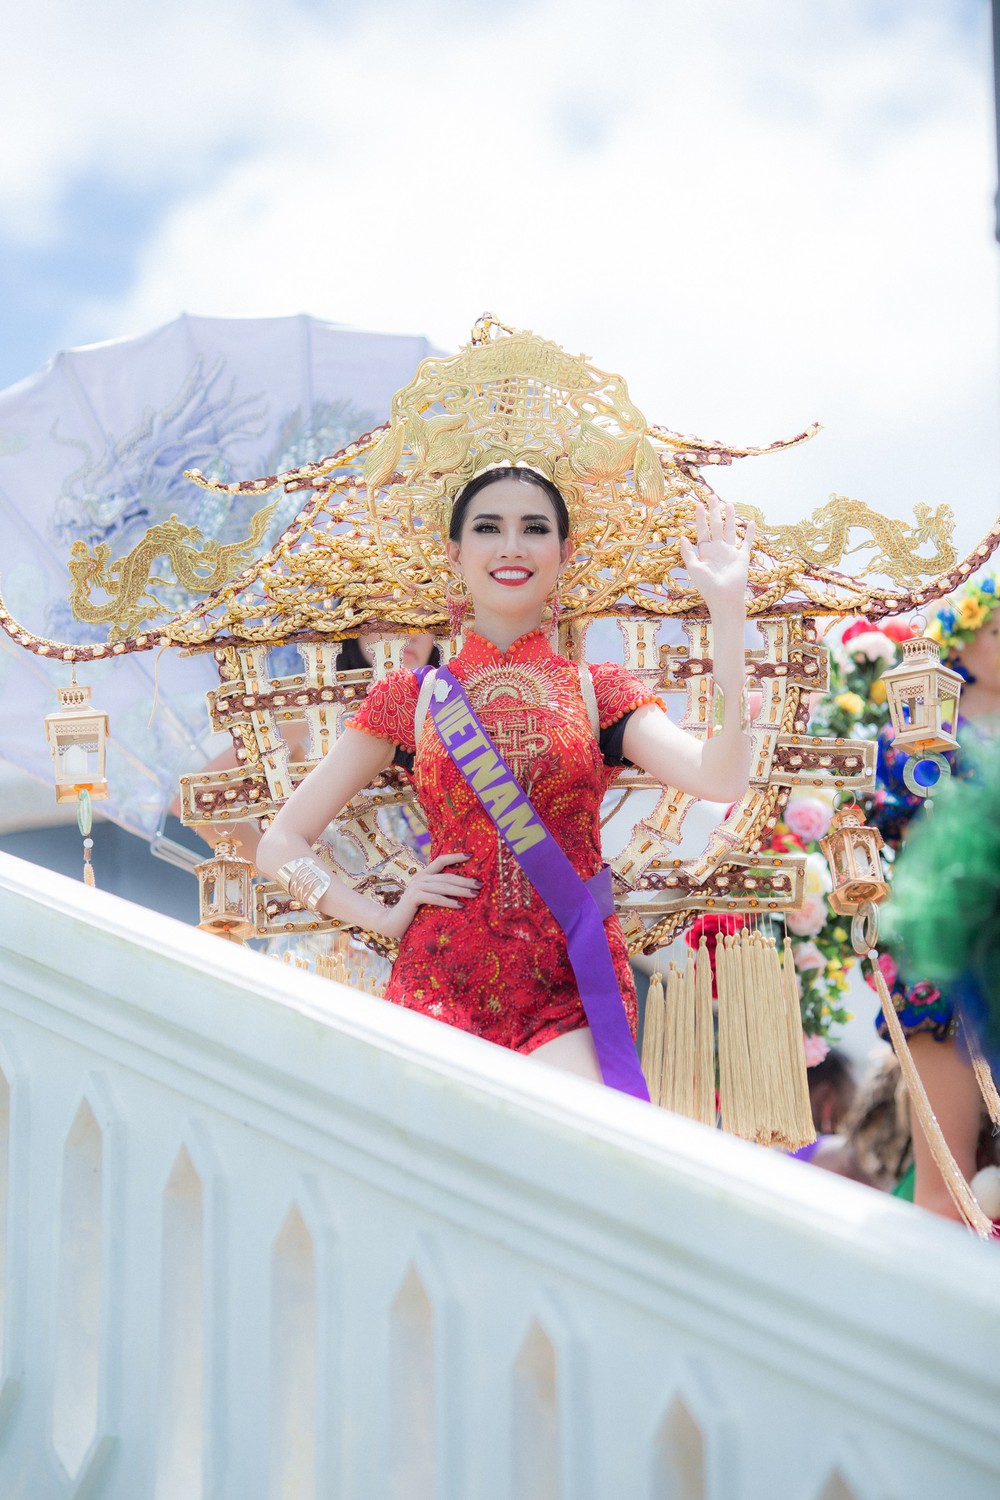 Phan Thị Mơ mặc trang phục nặng 15 kg dự thi nhan sắc quốc tế - Ảnh 3.